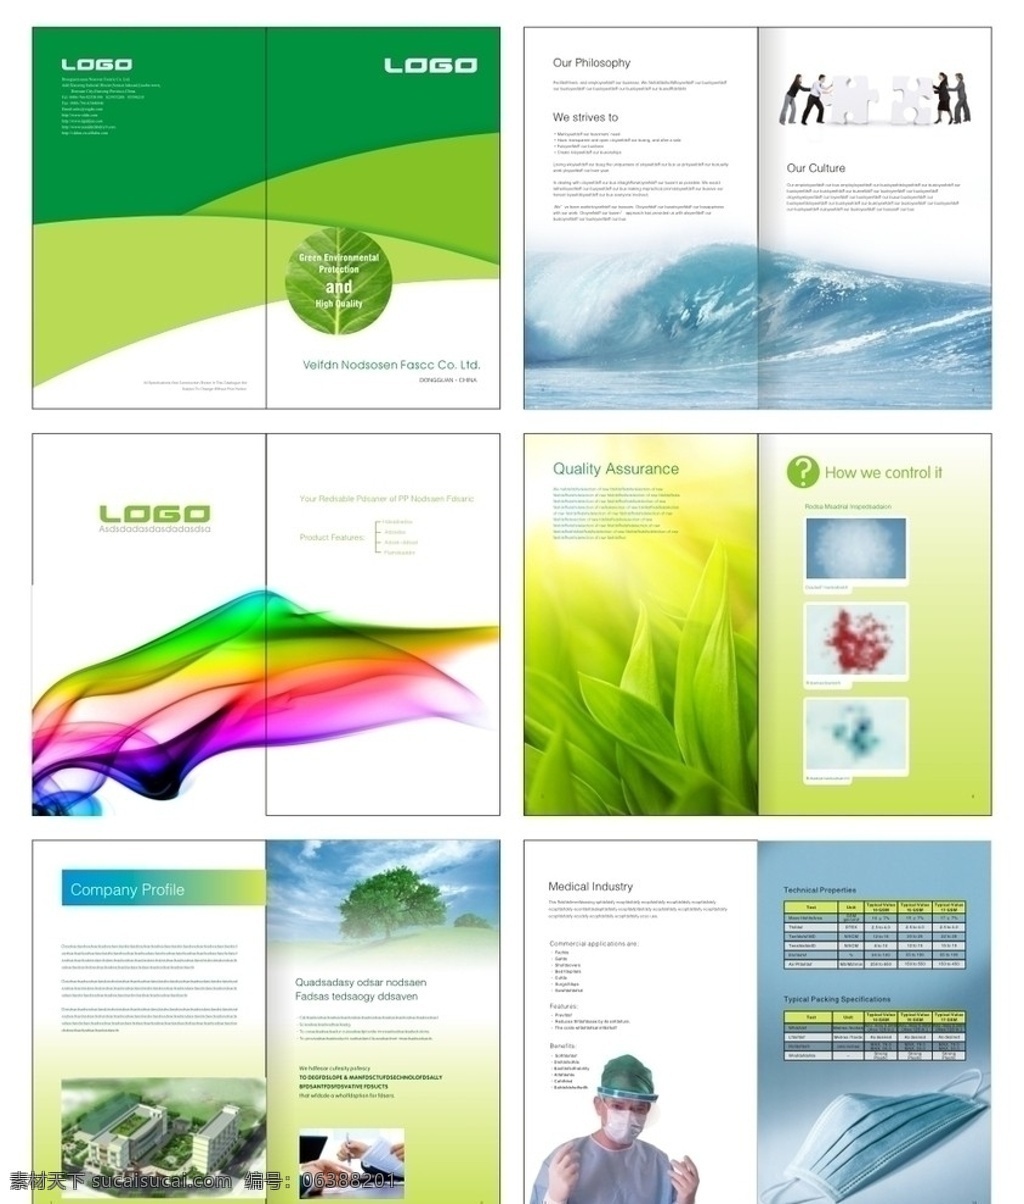 绿色环保 产品 画册设计 画册 绿色 环保 宣传 目录 封面 排版 企业形象 工厂 医学 材料 生态 健康 矢量